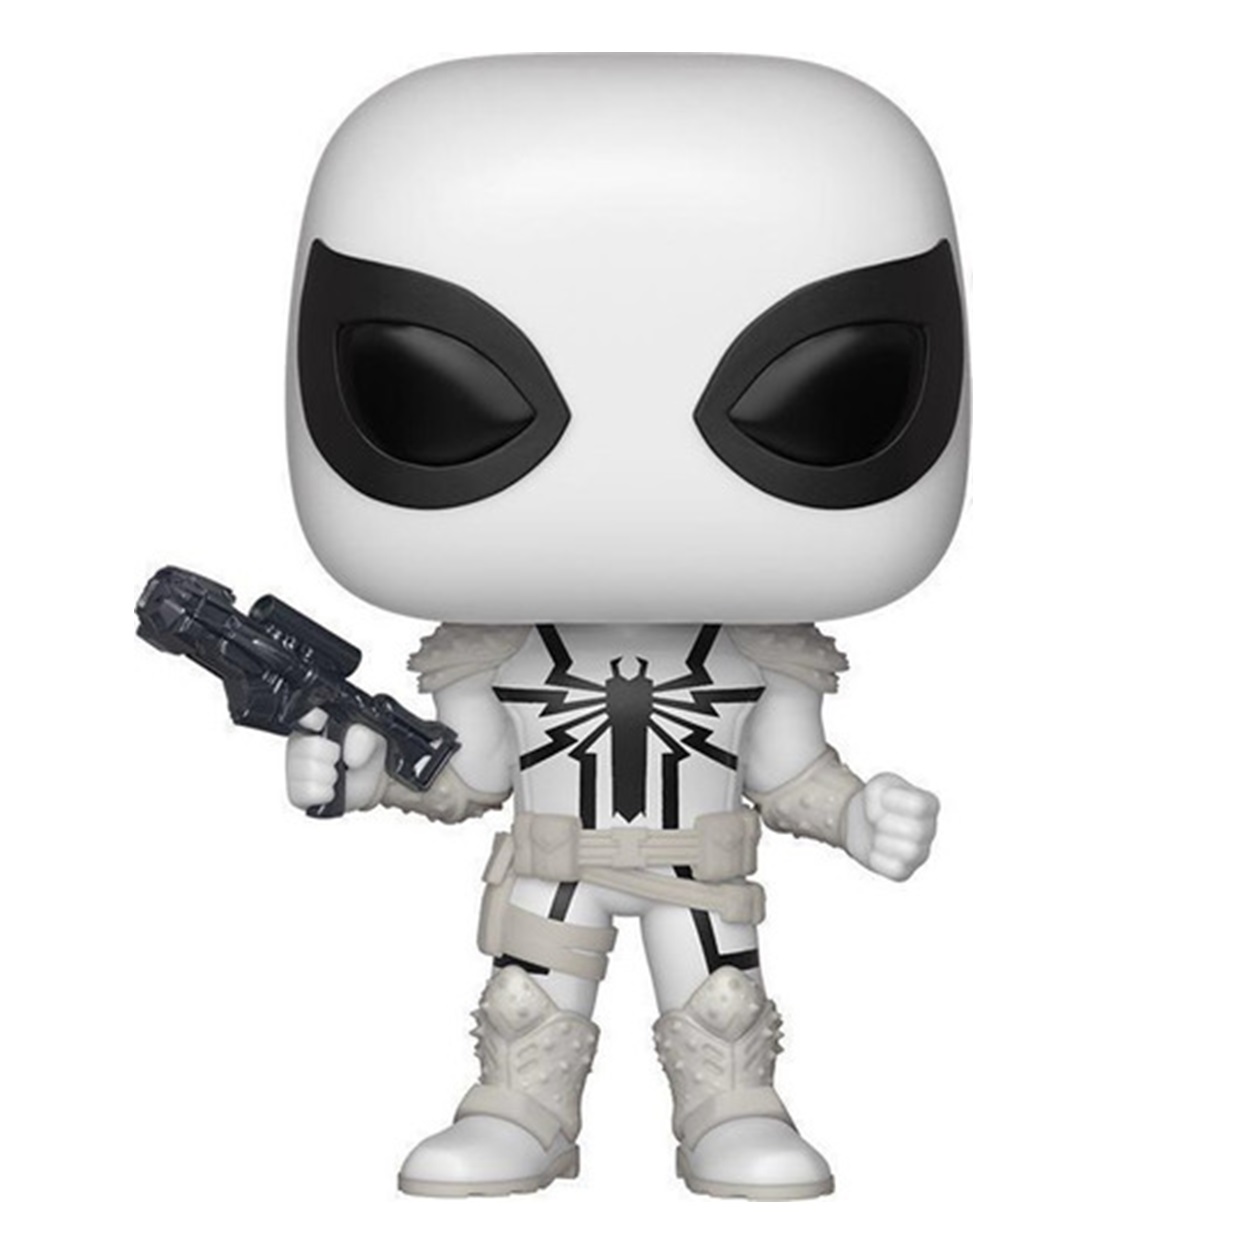 Agent Anti Venom #507 Funko Pop! Exclusivo Pop In A Box